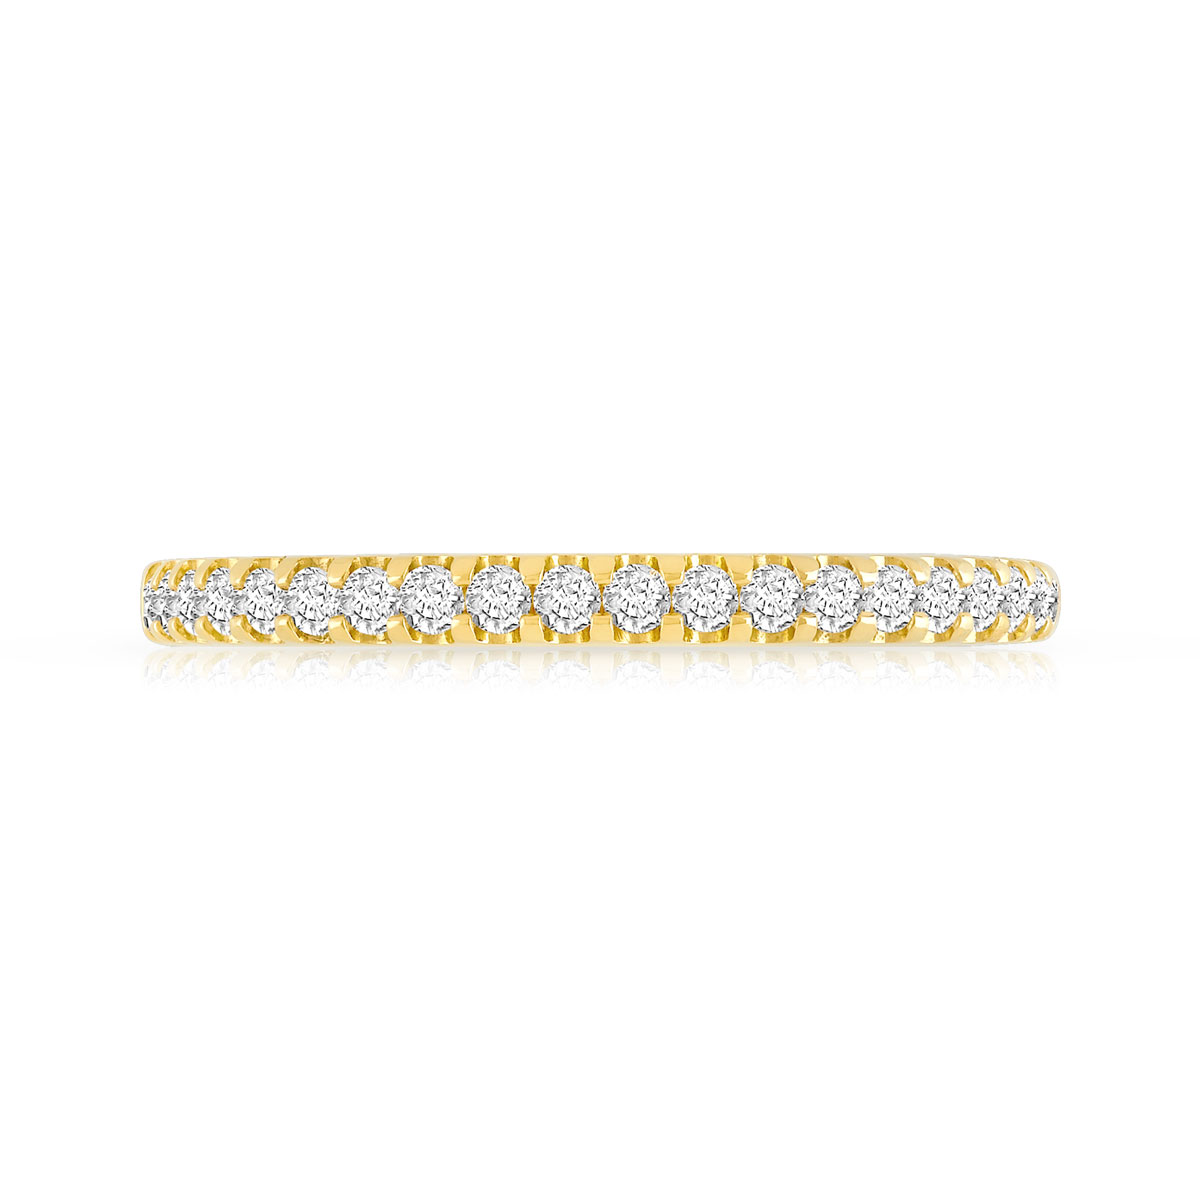 Alliance demi-tour or 750 jaune diamants synthétiques 0.25 carat - vue 3